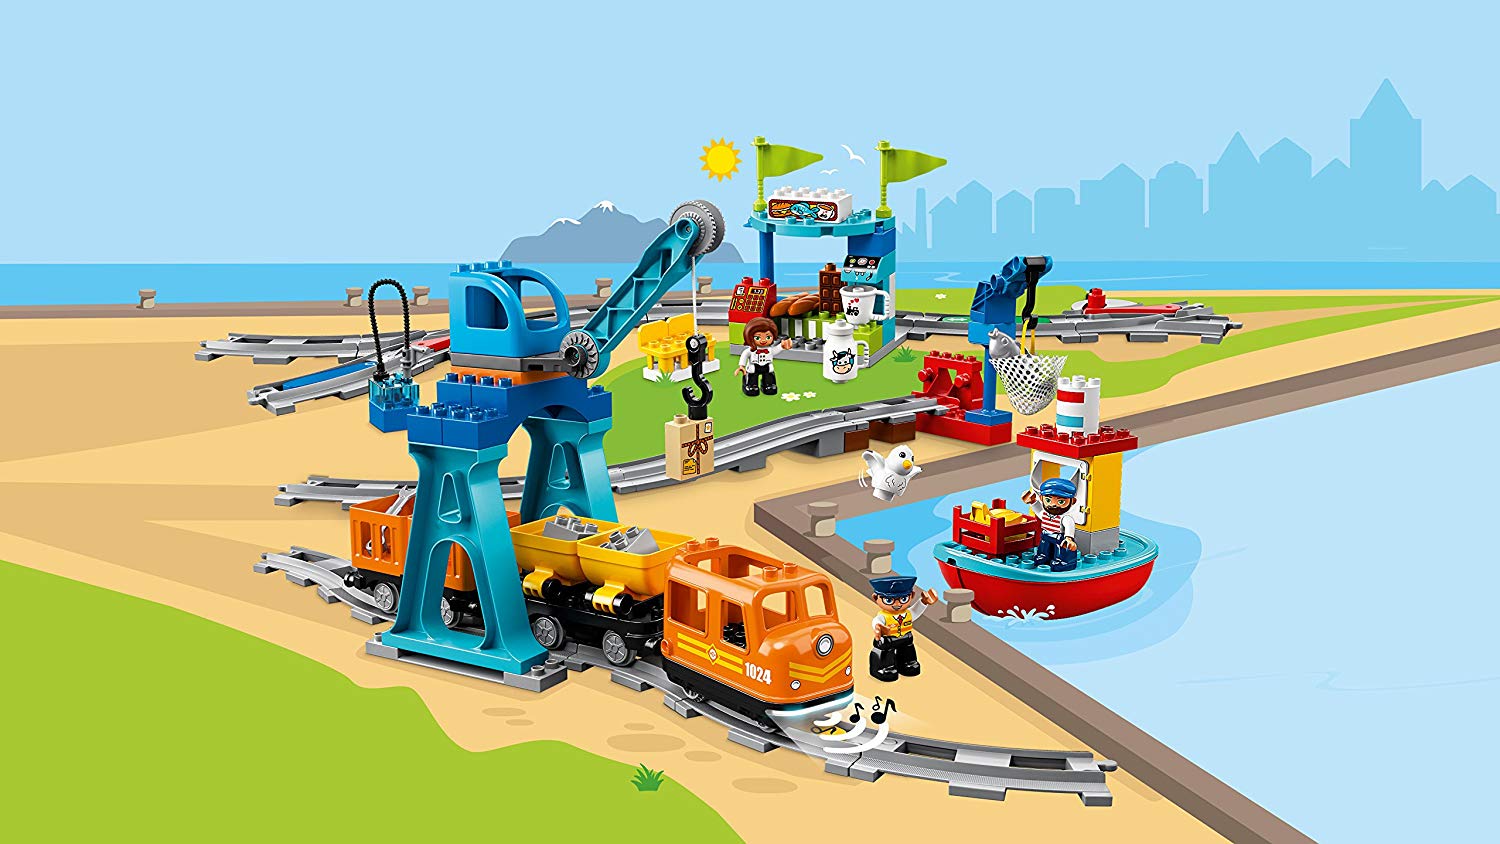 Конструктор Lego Duplo - Грузовой поезд  